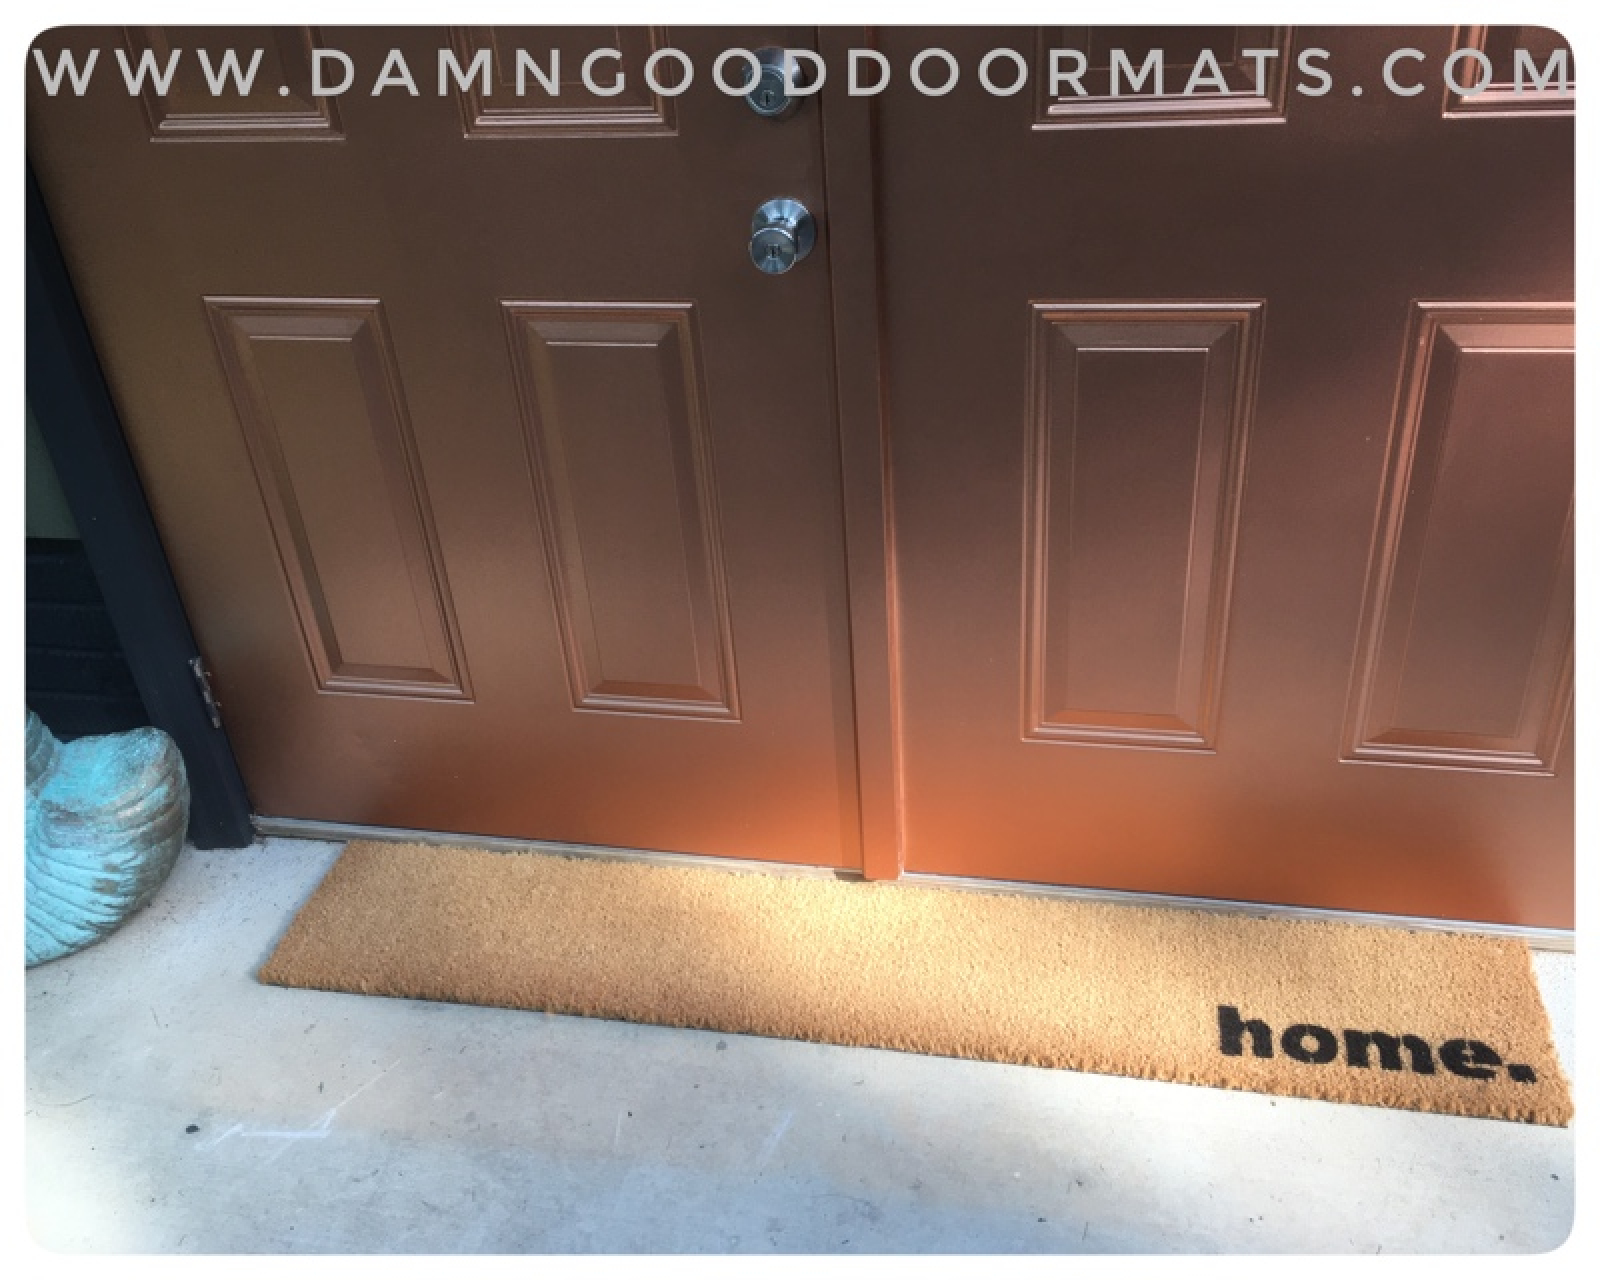 https://www.damngooddoormats.com/sites/damngooddoormats.indiemade.com/files/imagecache/im_clientsite_product_zoom/xl_home_damn_good_doormats.jpg